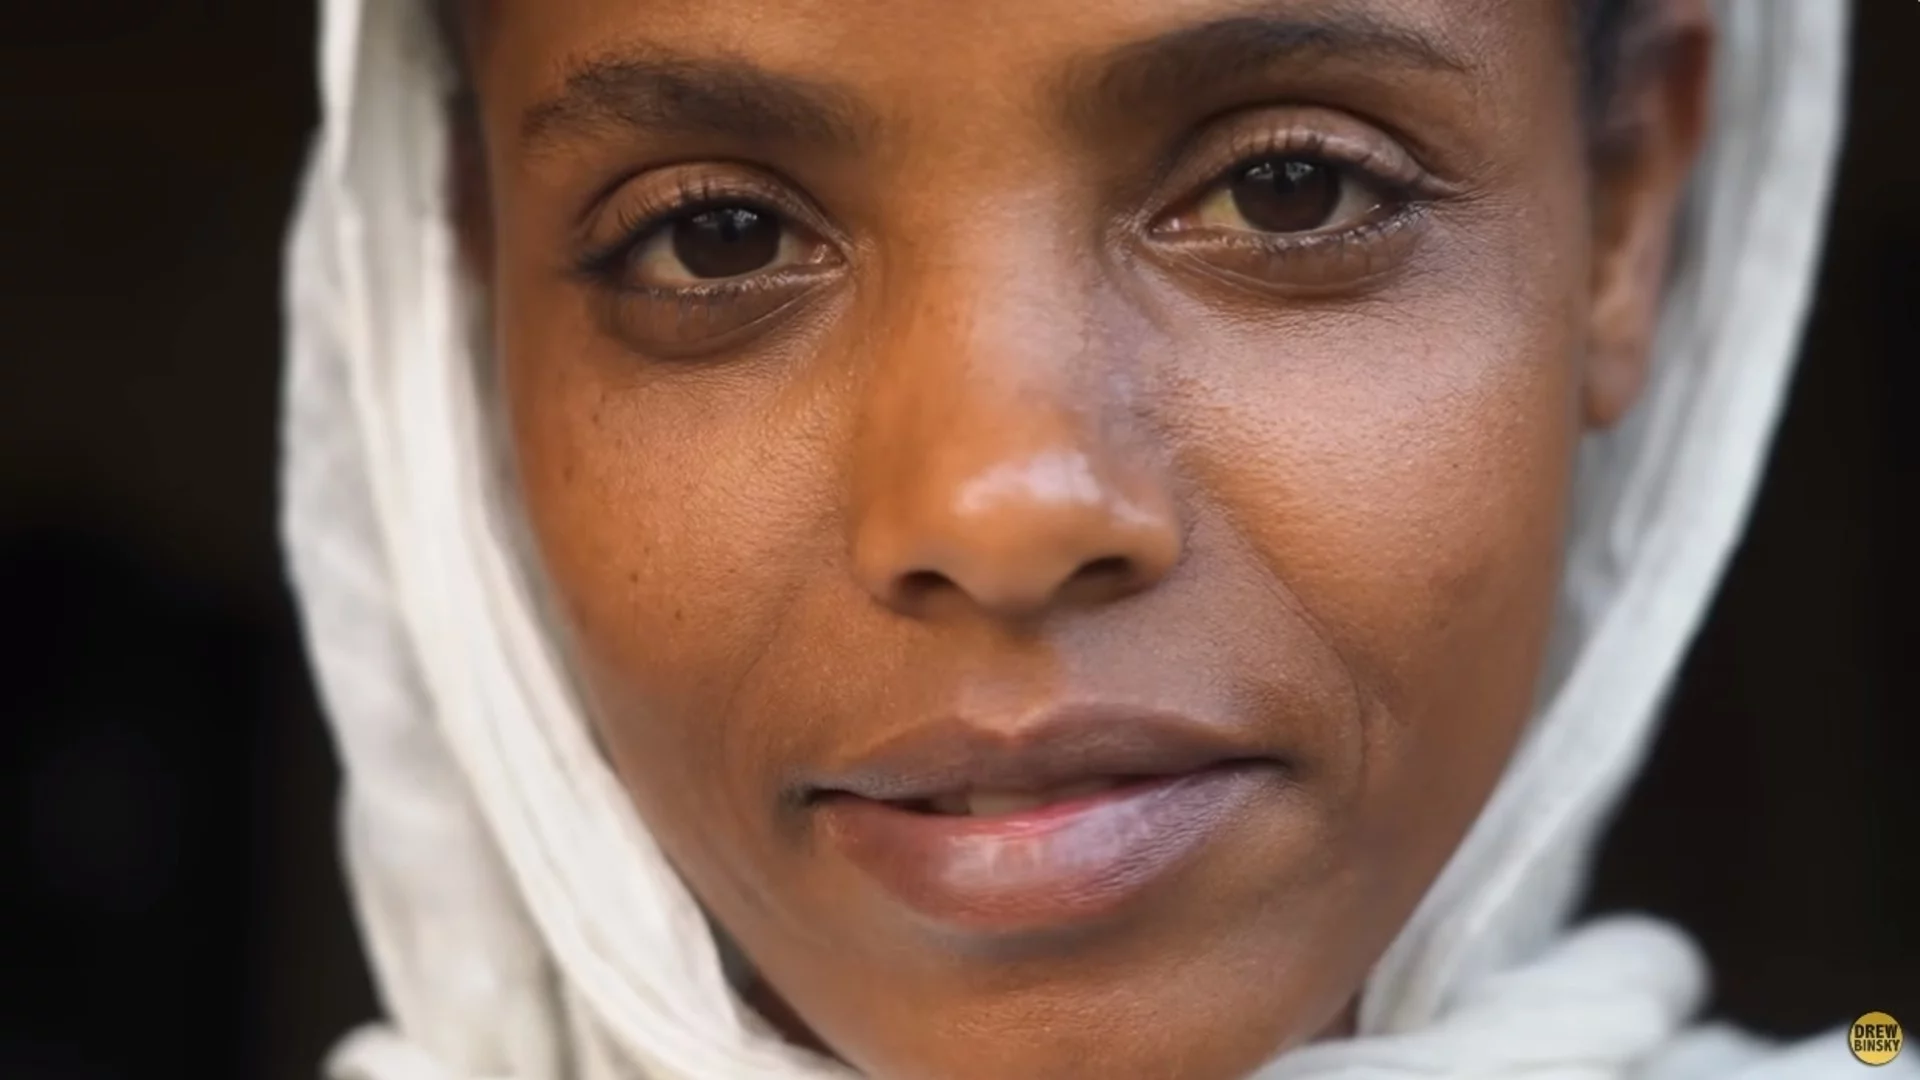 16 години без храна и течности: Млада етиопка разказва за състоянието си (ВИДЕО)